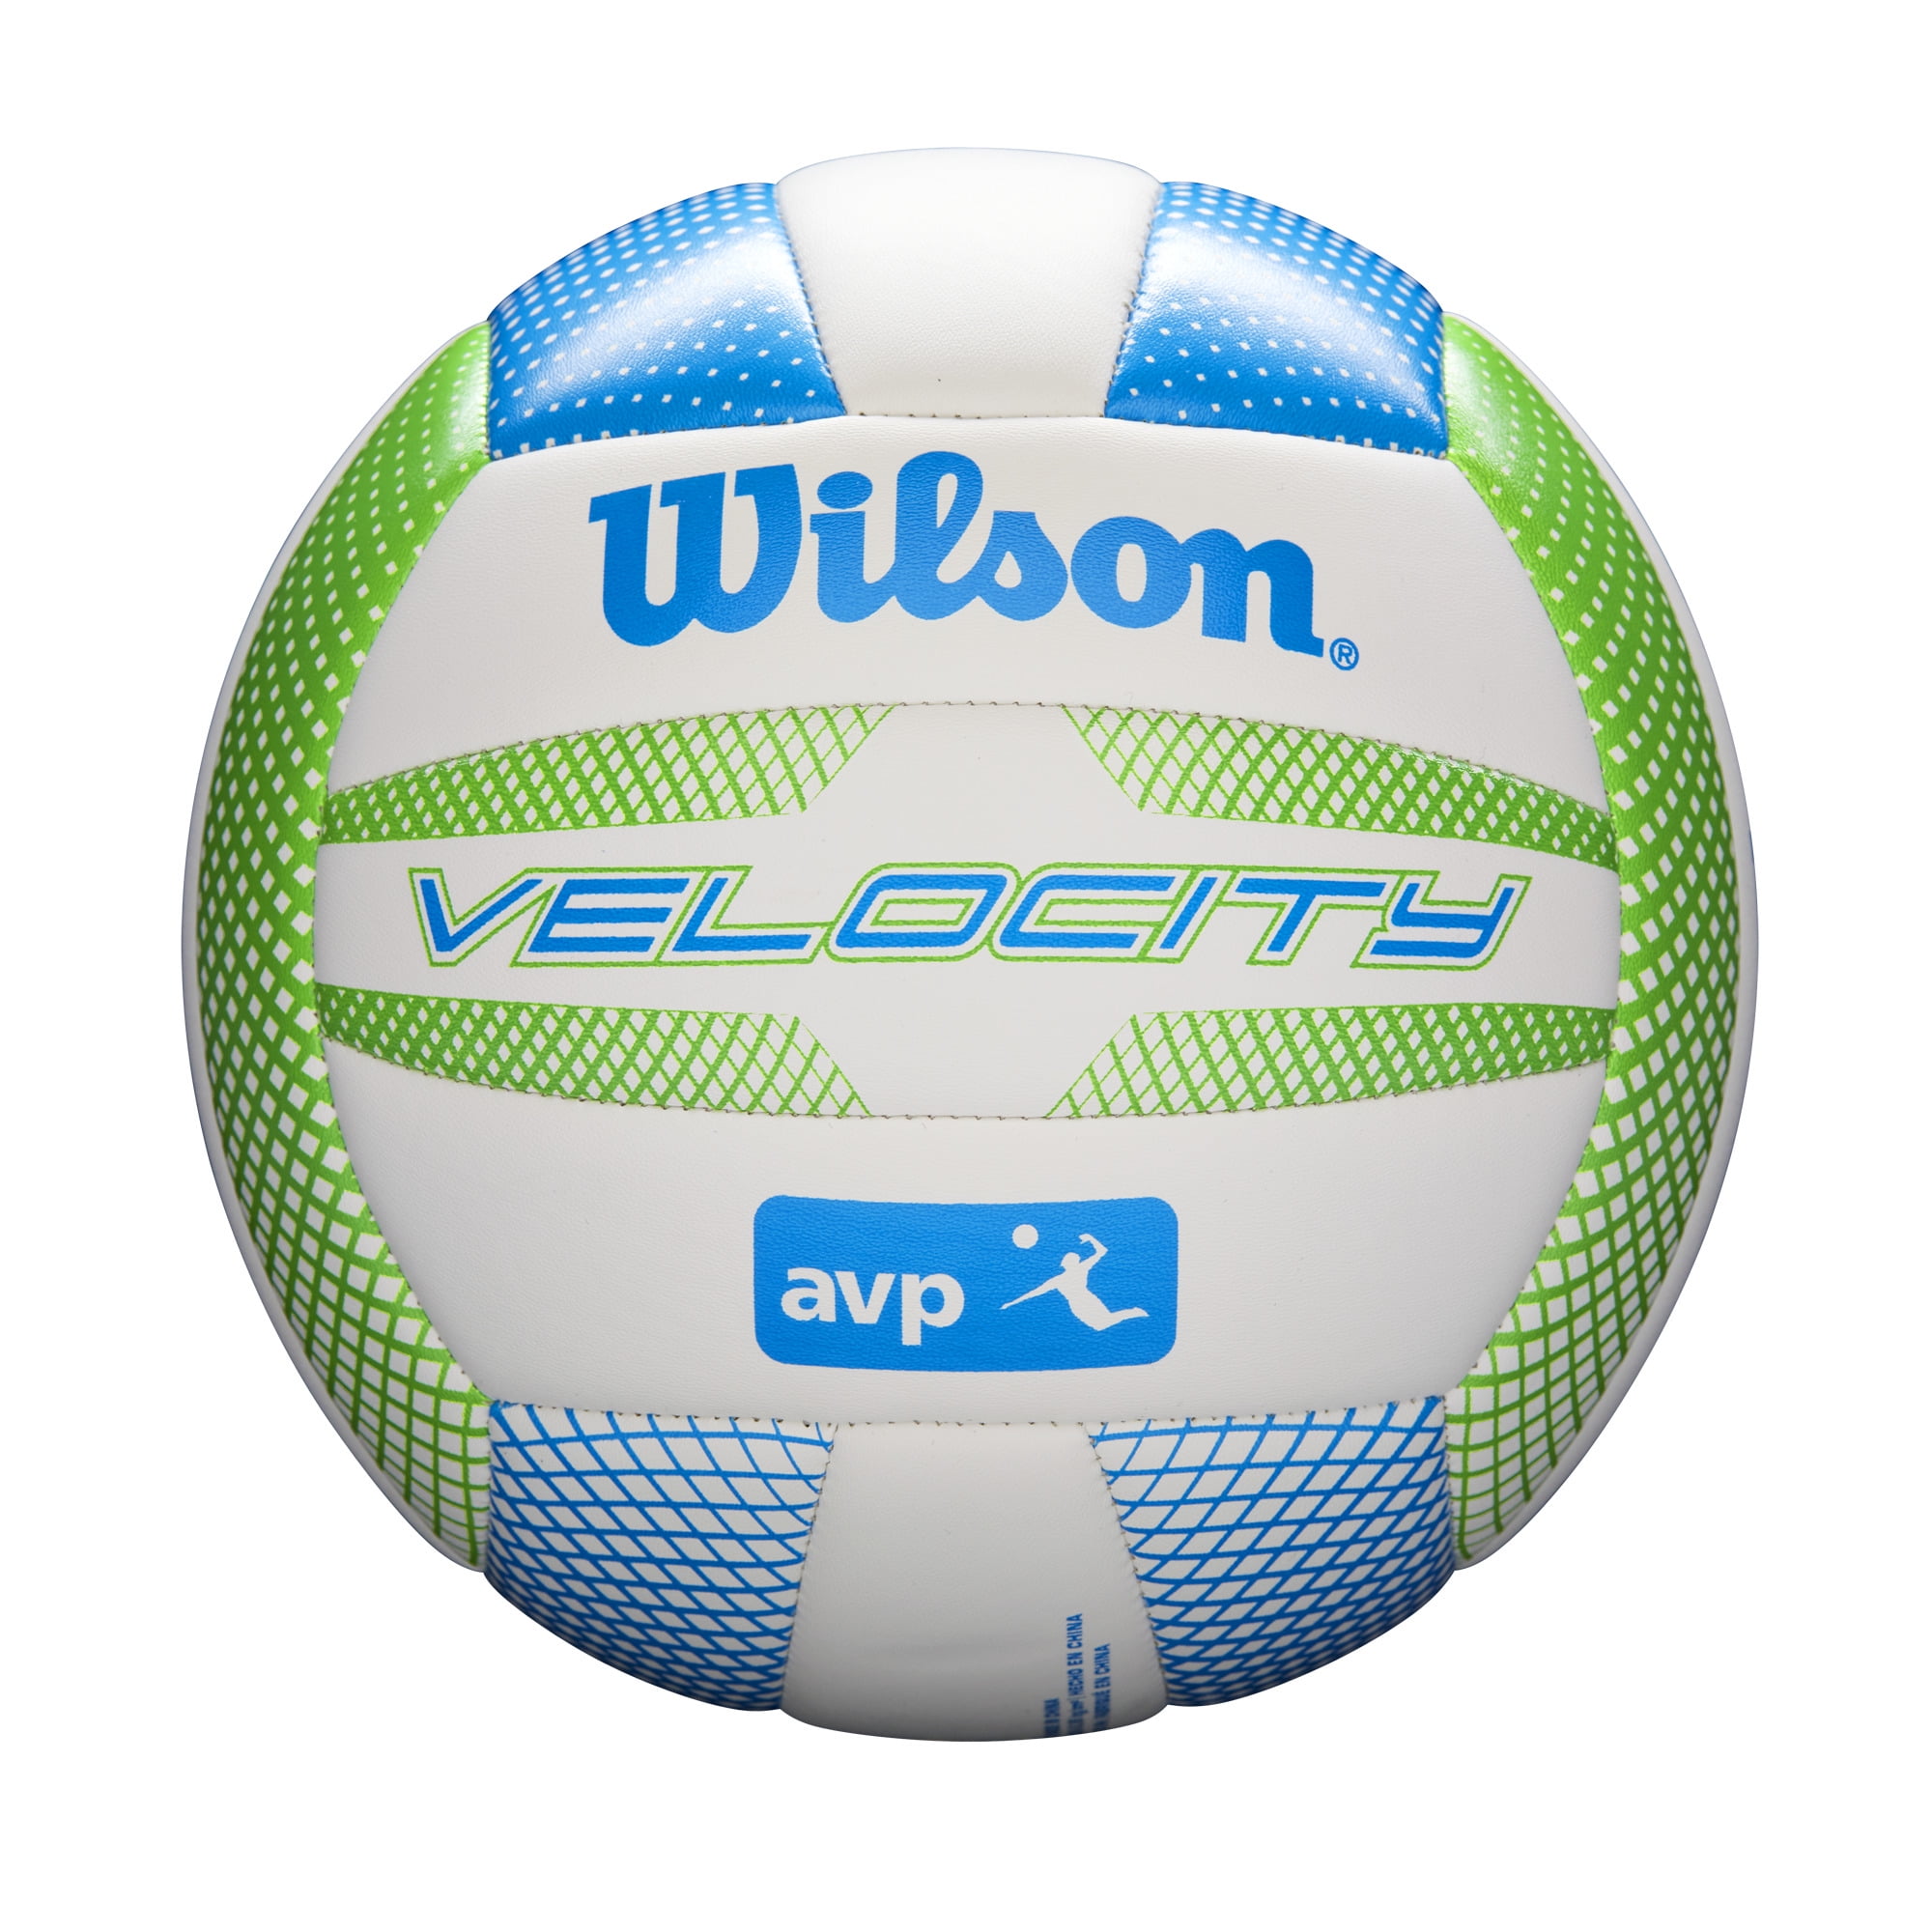 Wilson Mr Wilson Volleyball Castaway Official Size Face Ball Outdoor Beach 